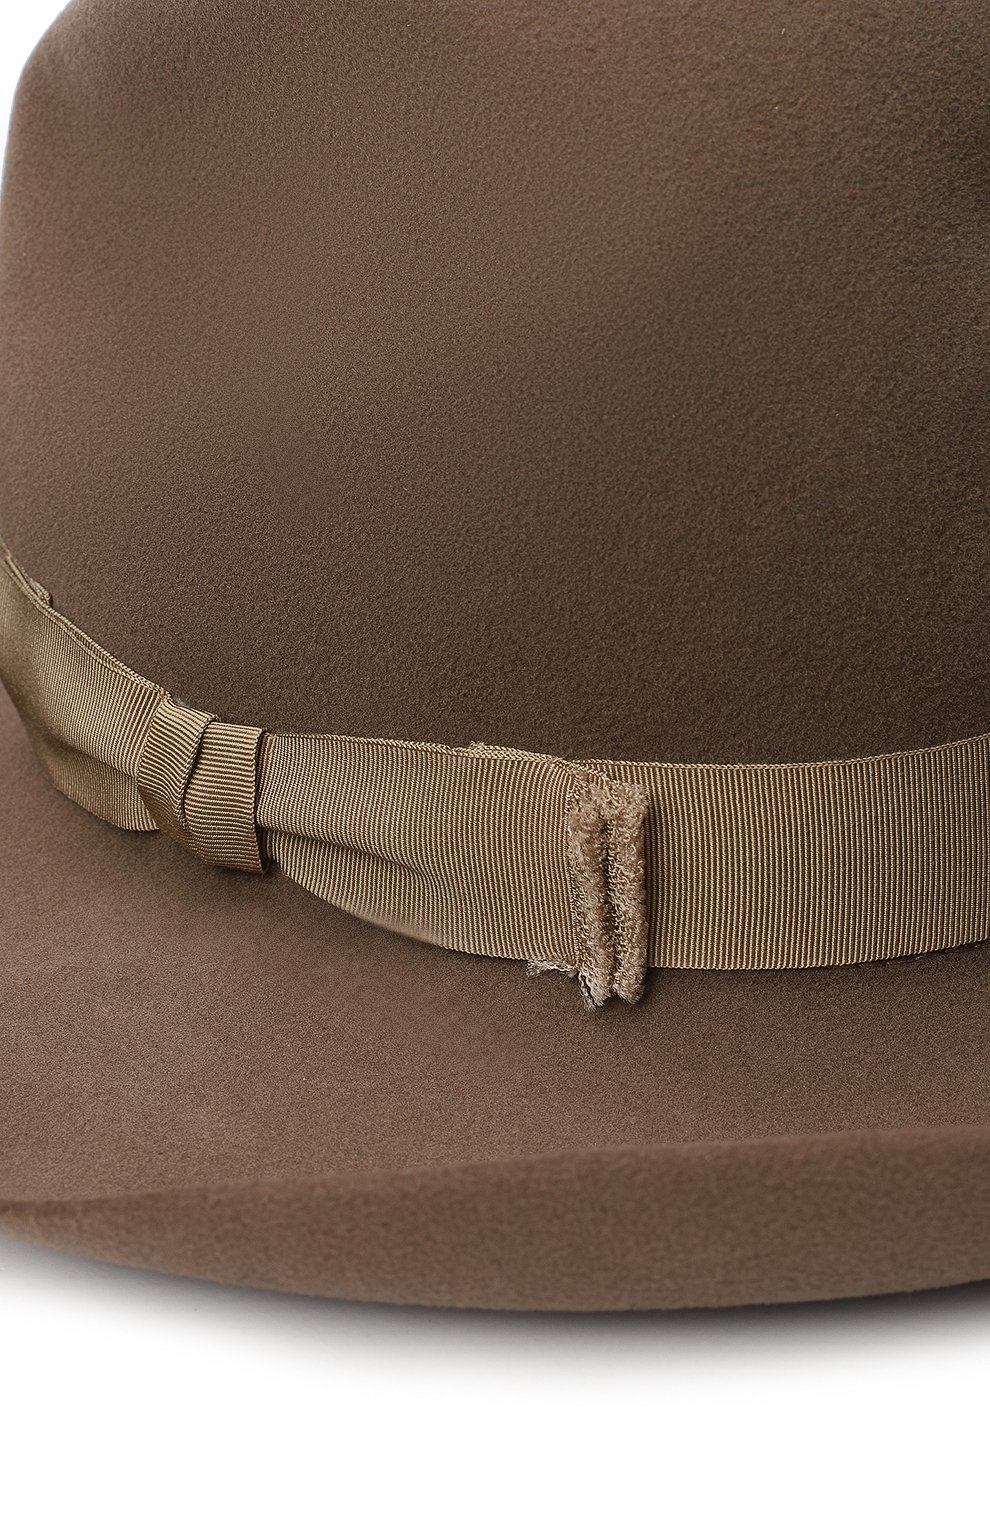 Фетровая шляпа | Ralph Lauren | Коричневый - 3